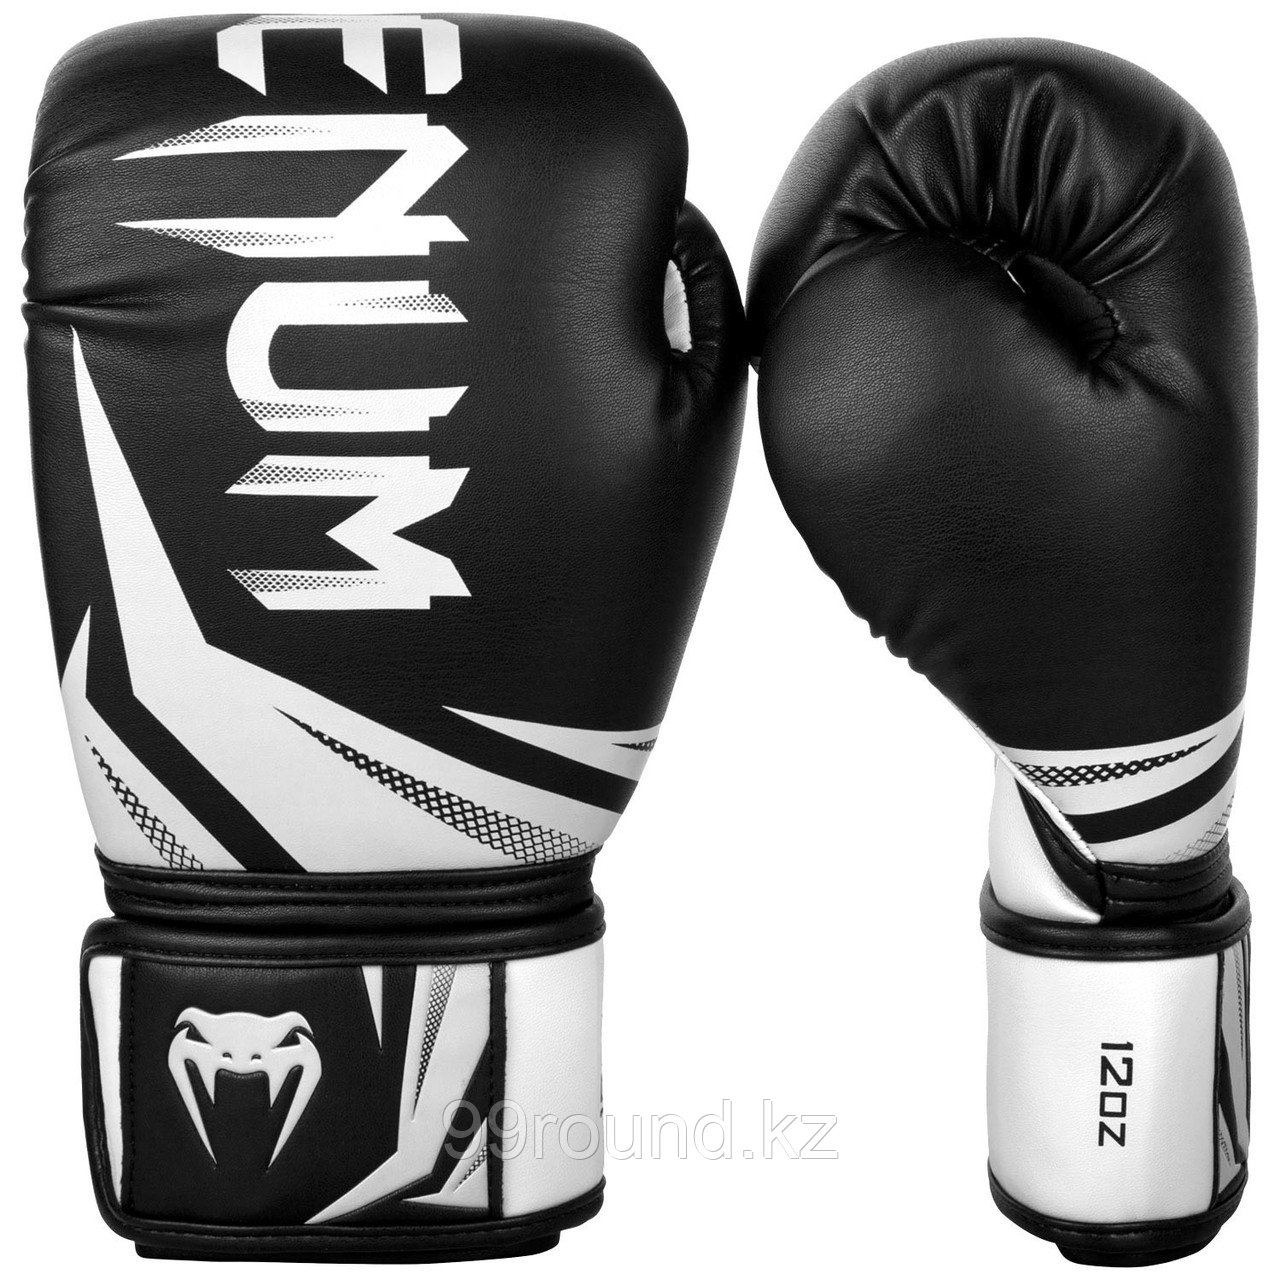 Перчатки для бокса Venum Challenger 3.0 Boxing Gloves-Black/White